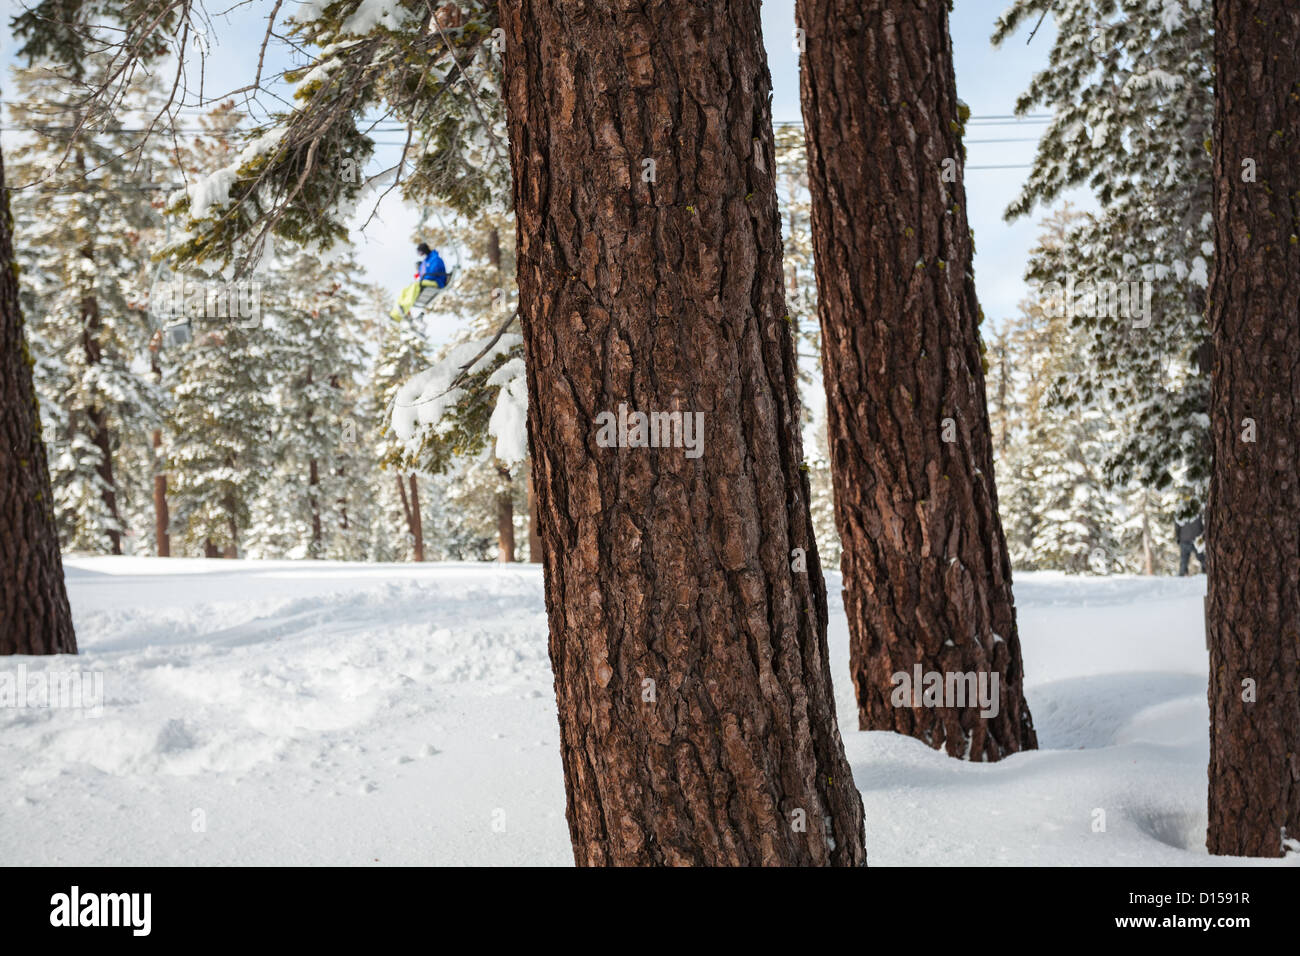 Mirando a lo largo de la corteza rugosa de los árboles para el snowboarder montando un telesilla en la estación de esquí de California con nieve fresca en el suelo debajo. Foto de stock